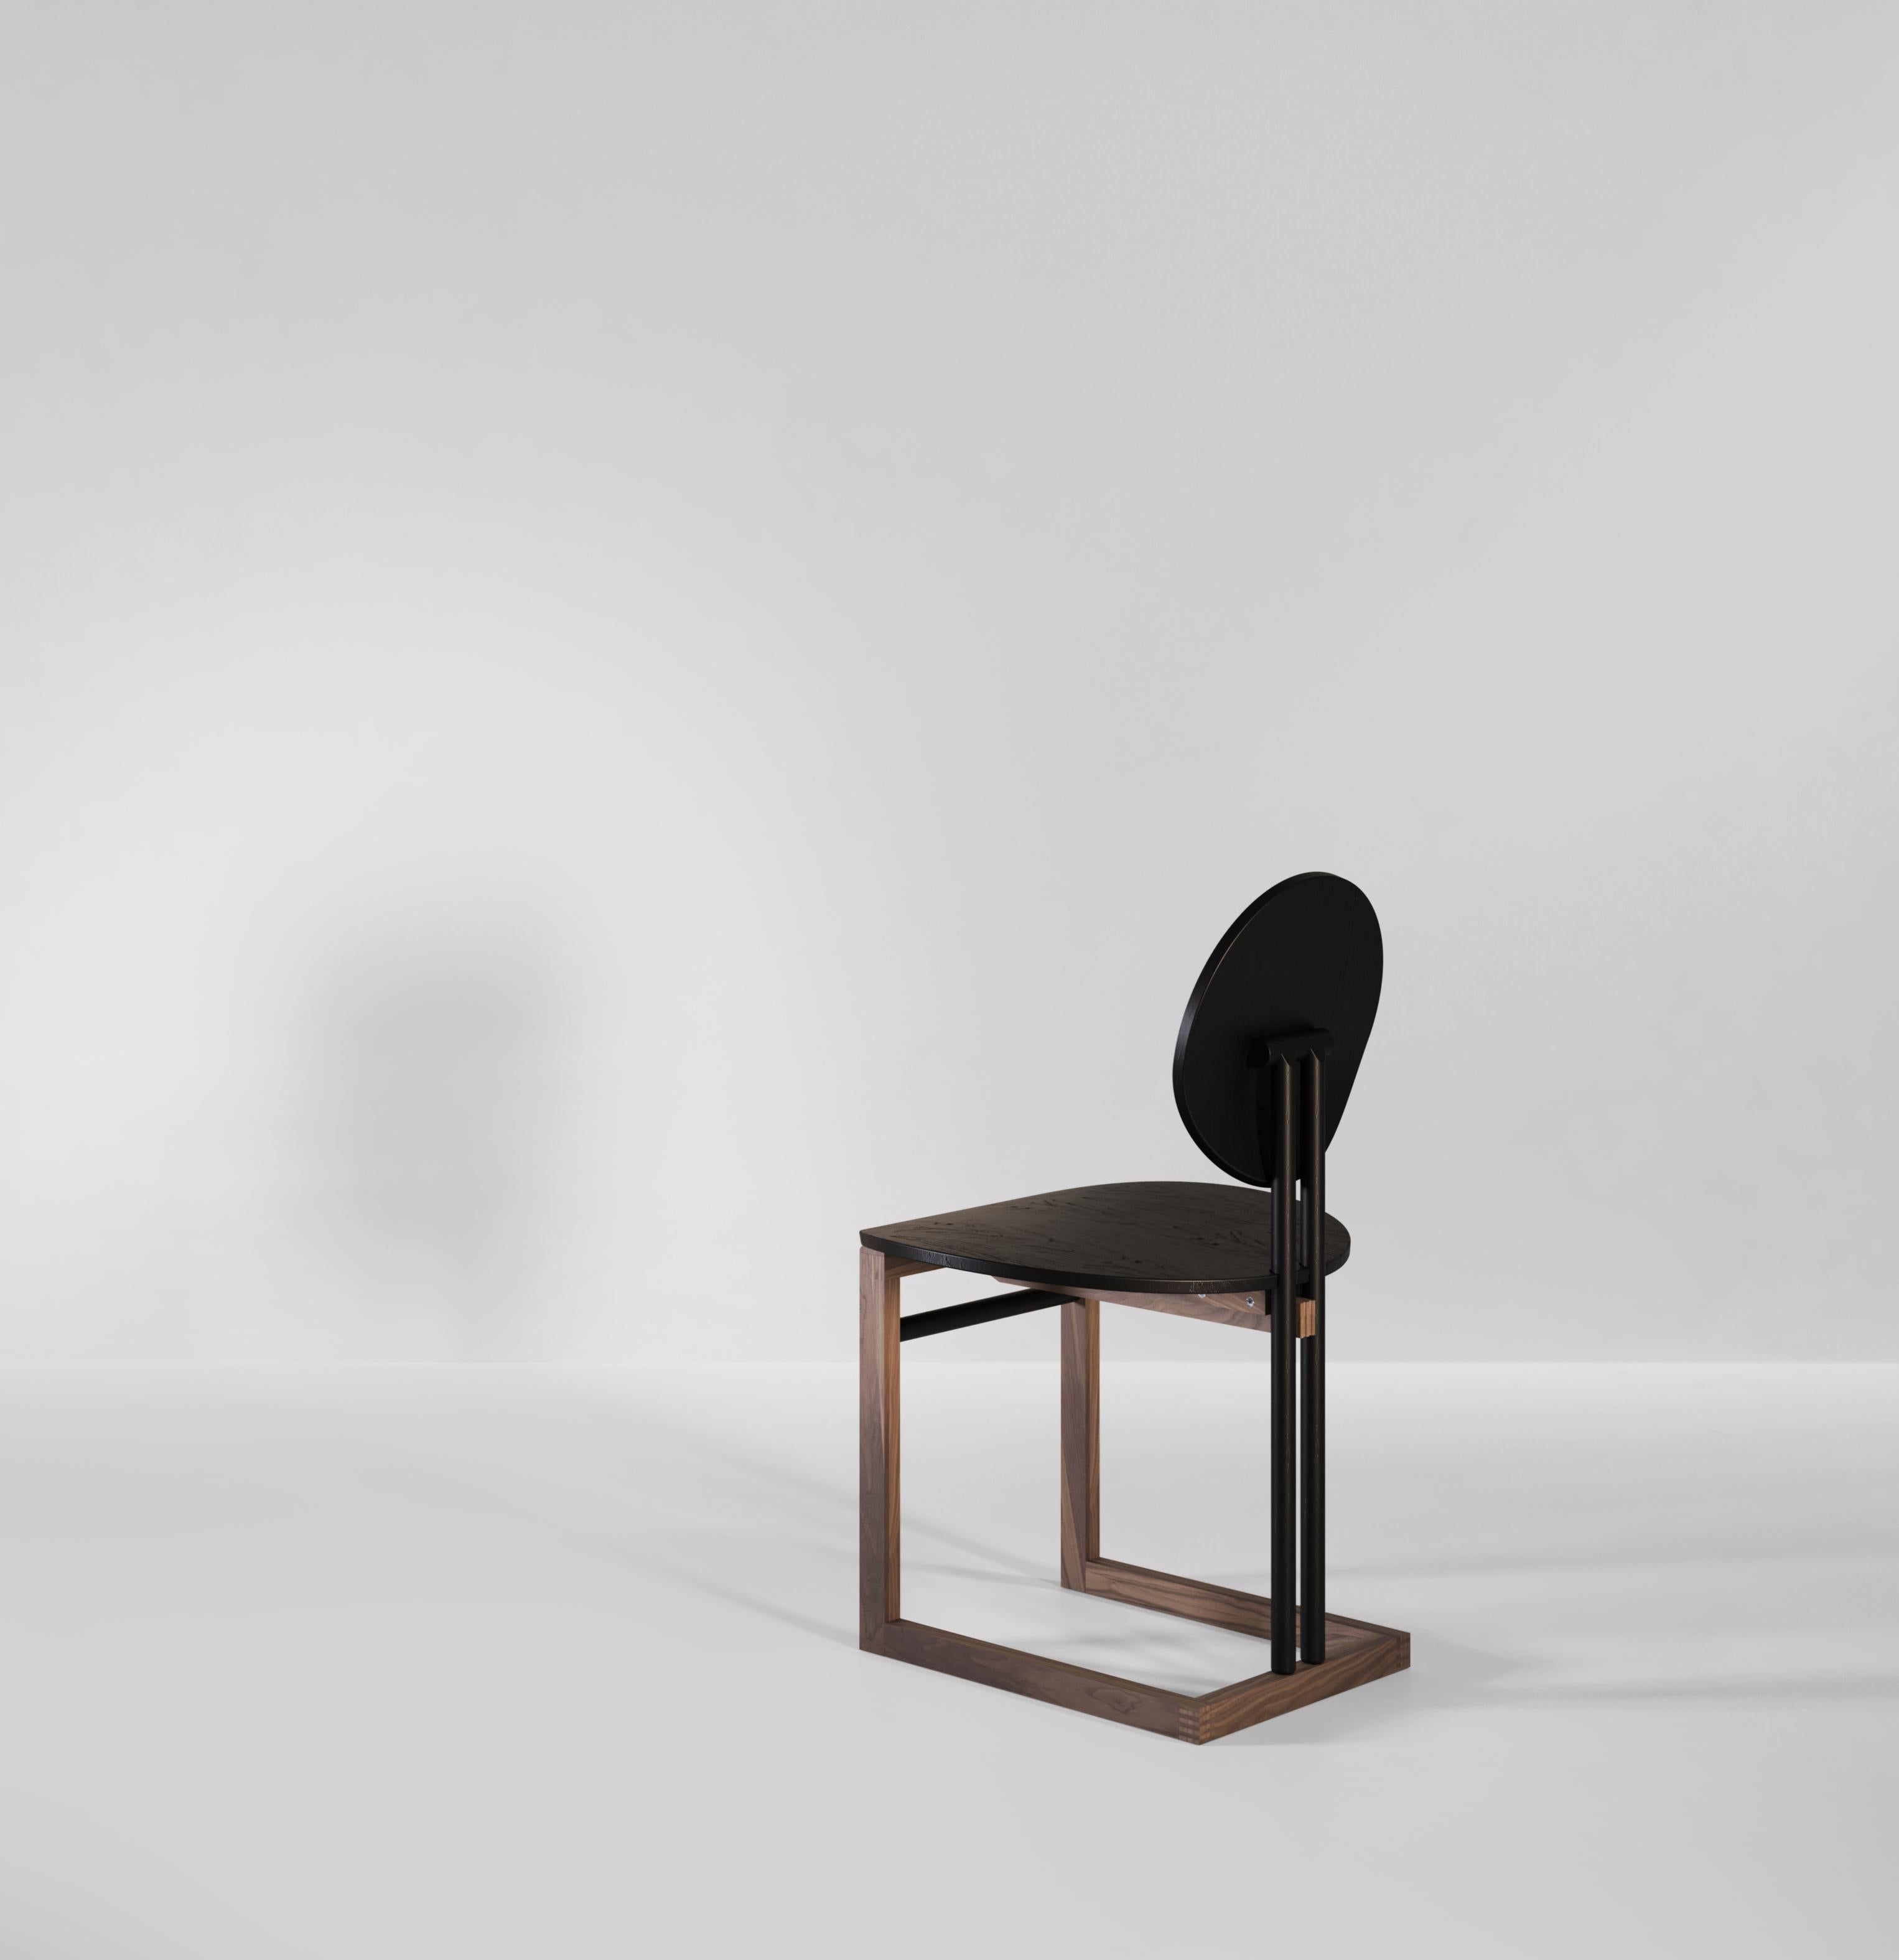 Ein handgefertigter Esszimmerstuhl aus Holz, inspiriert von Vintage-Formen und zeitgenössischen Techniken. Zwei Fast-Kreise, die als Rückenlehne und Sitz dienen, bieten Komfort und Stil. Die Struktur, die den Stuhl hält, ist aus einem